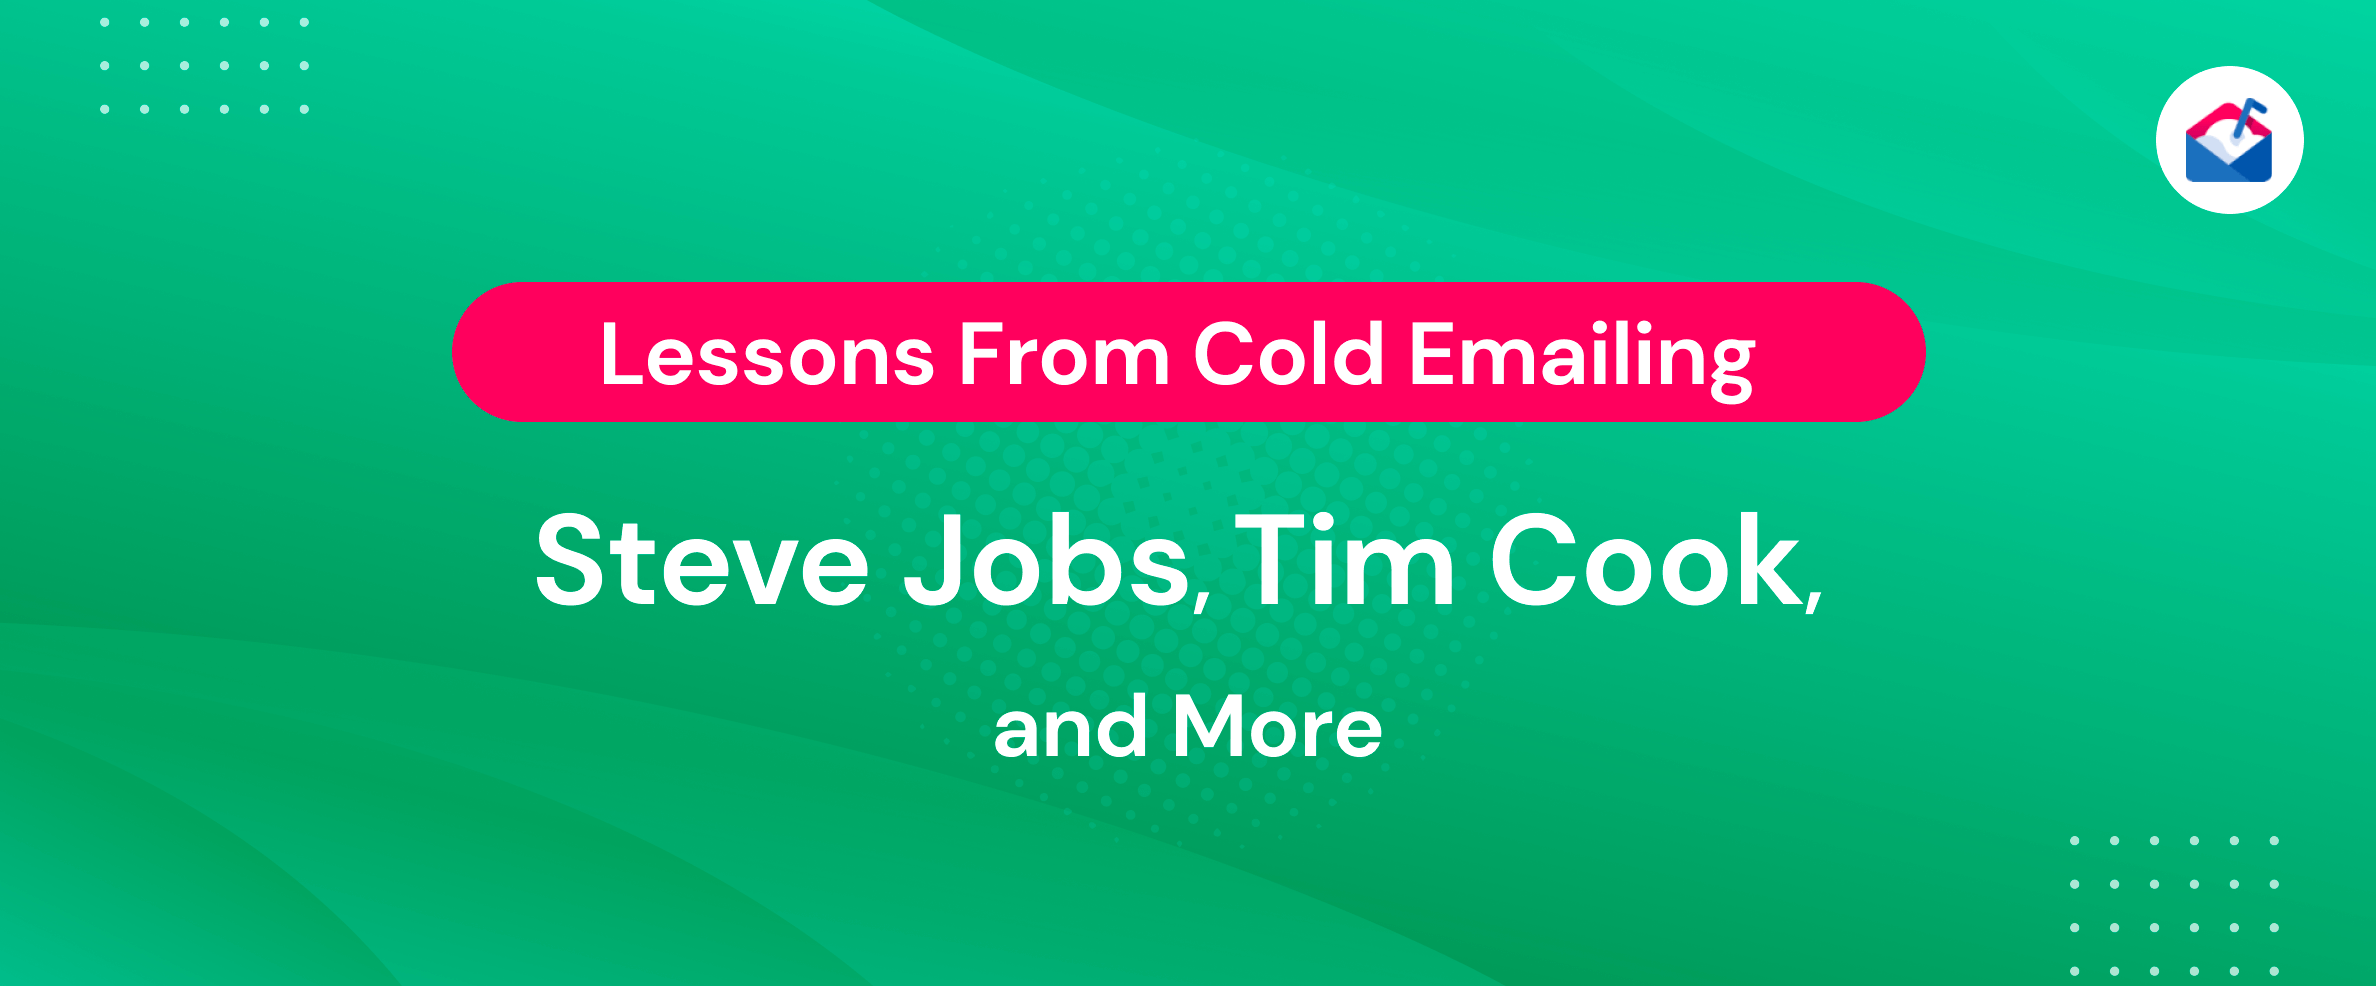 บทเรียนจาก Cold Emailing Steve Jobs, Tim Cook และอื่นๆ